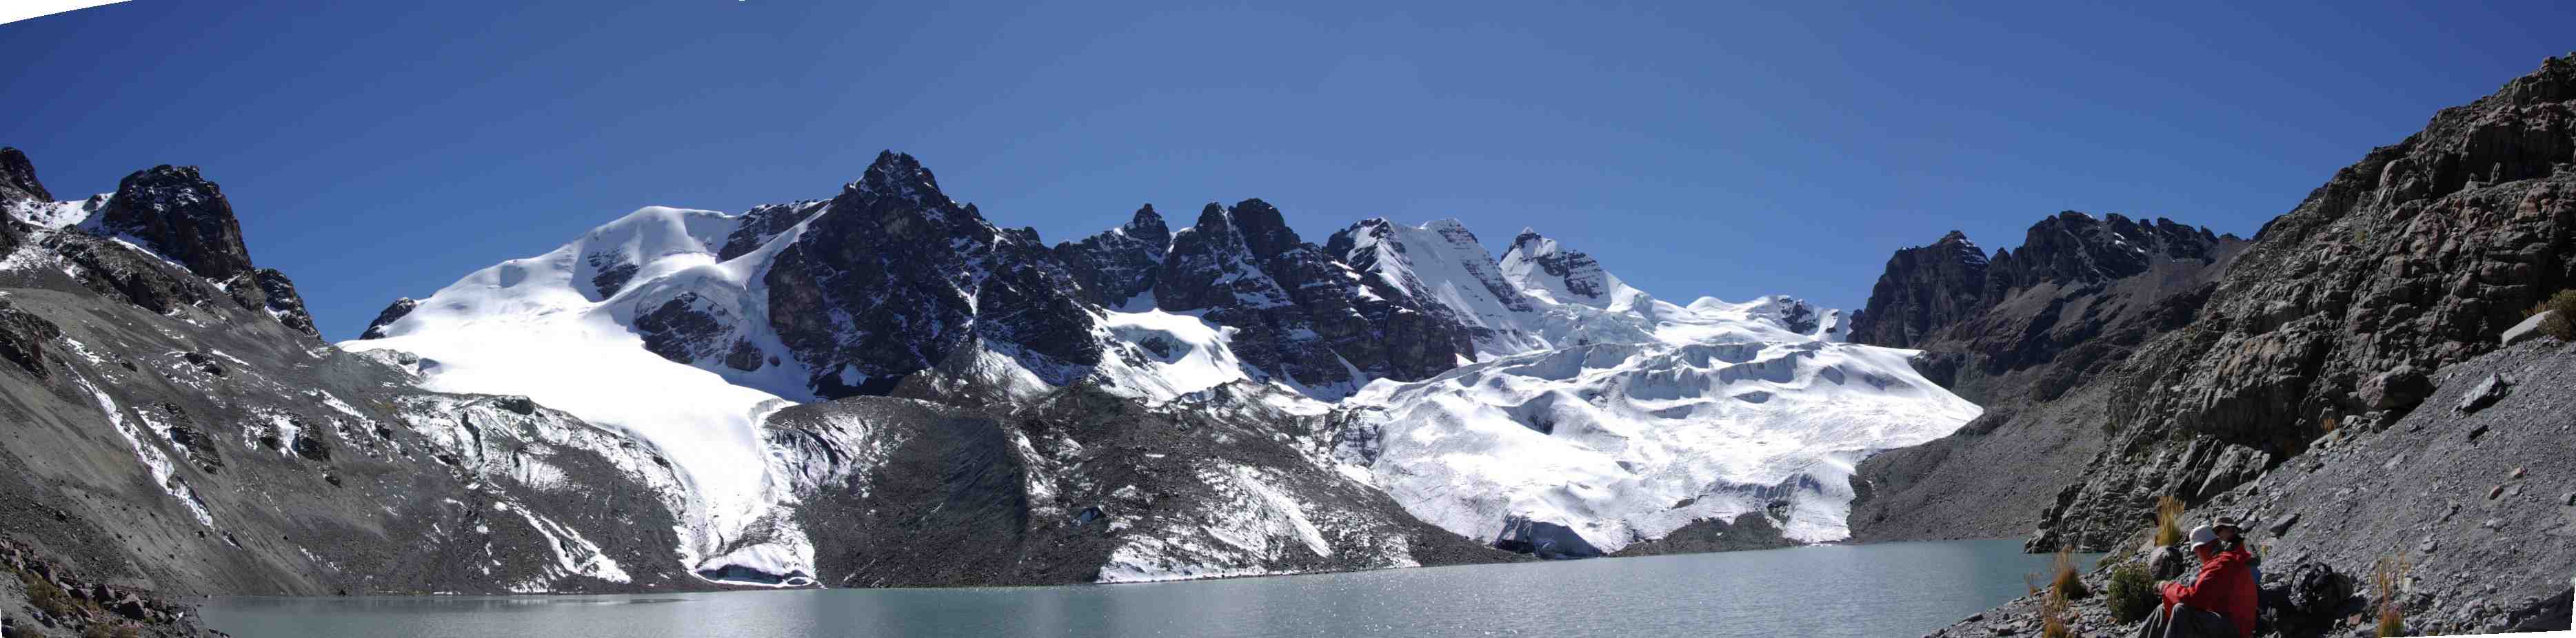 Le lac glaciaire du Condoriri, le 11 août 2008